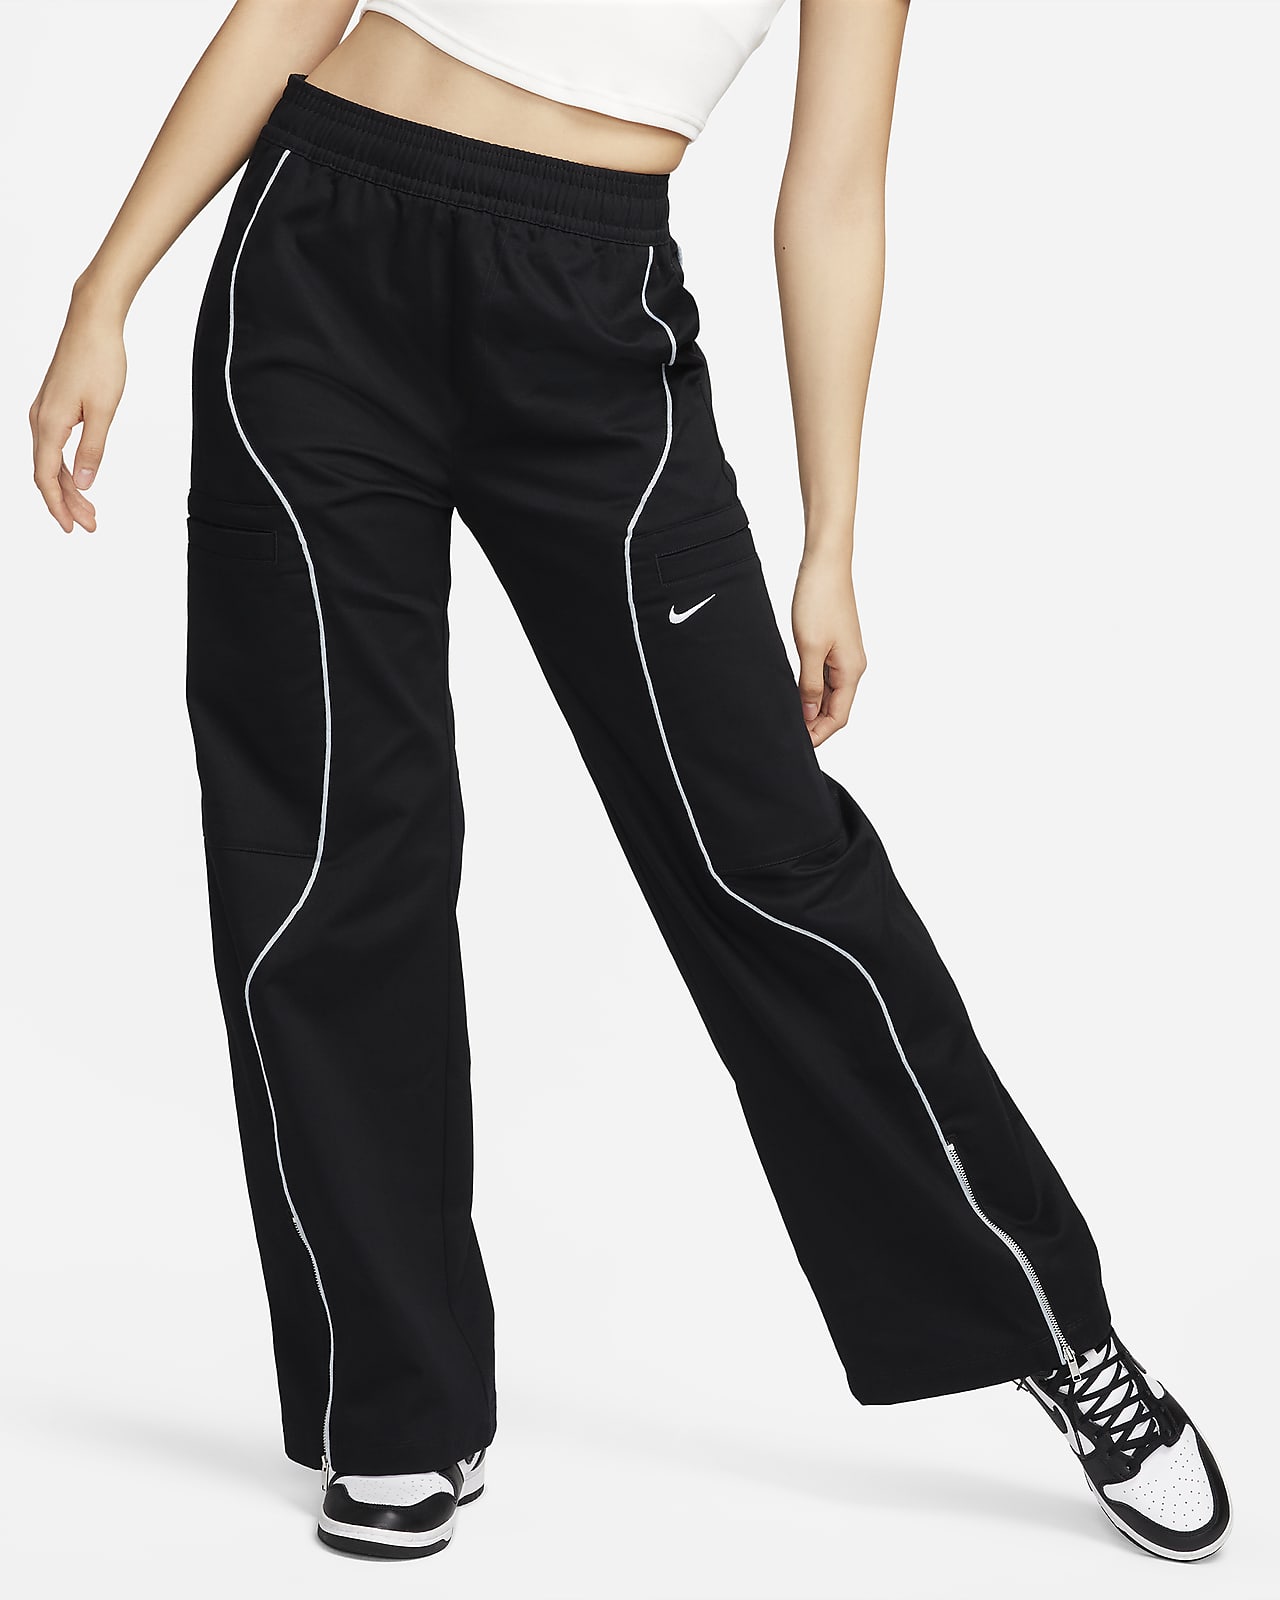 Nike Sportswear magas derekú, szőtt női nadrág